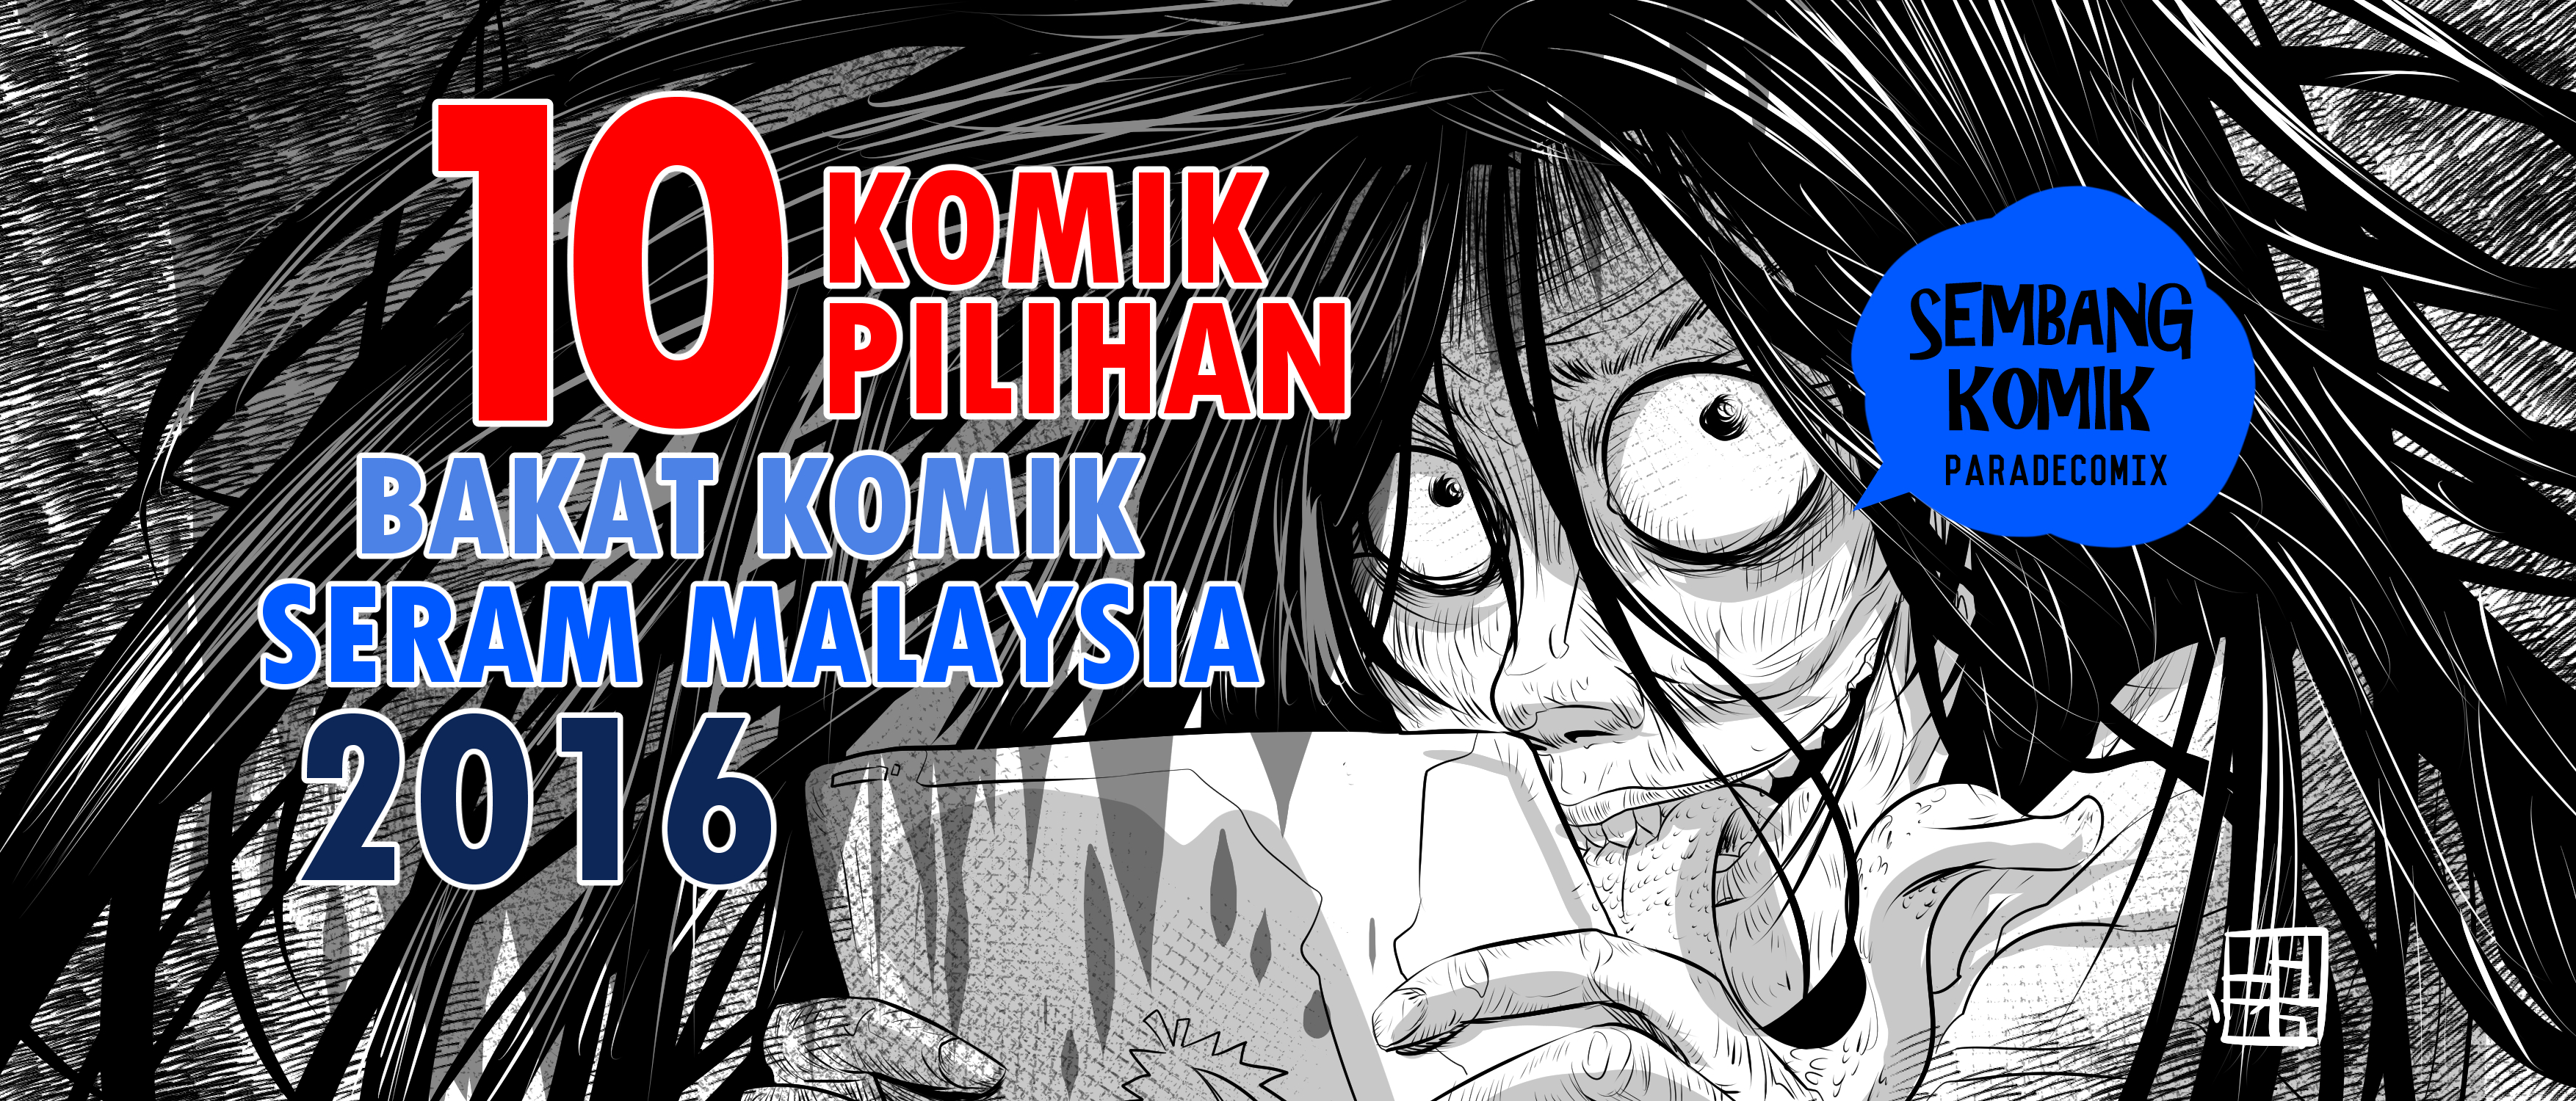 10 KOMIK PILIHAN Bakat Komik Seram Malaysia Paradecomix